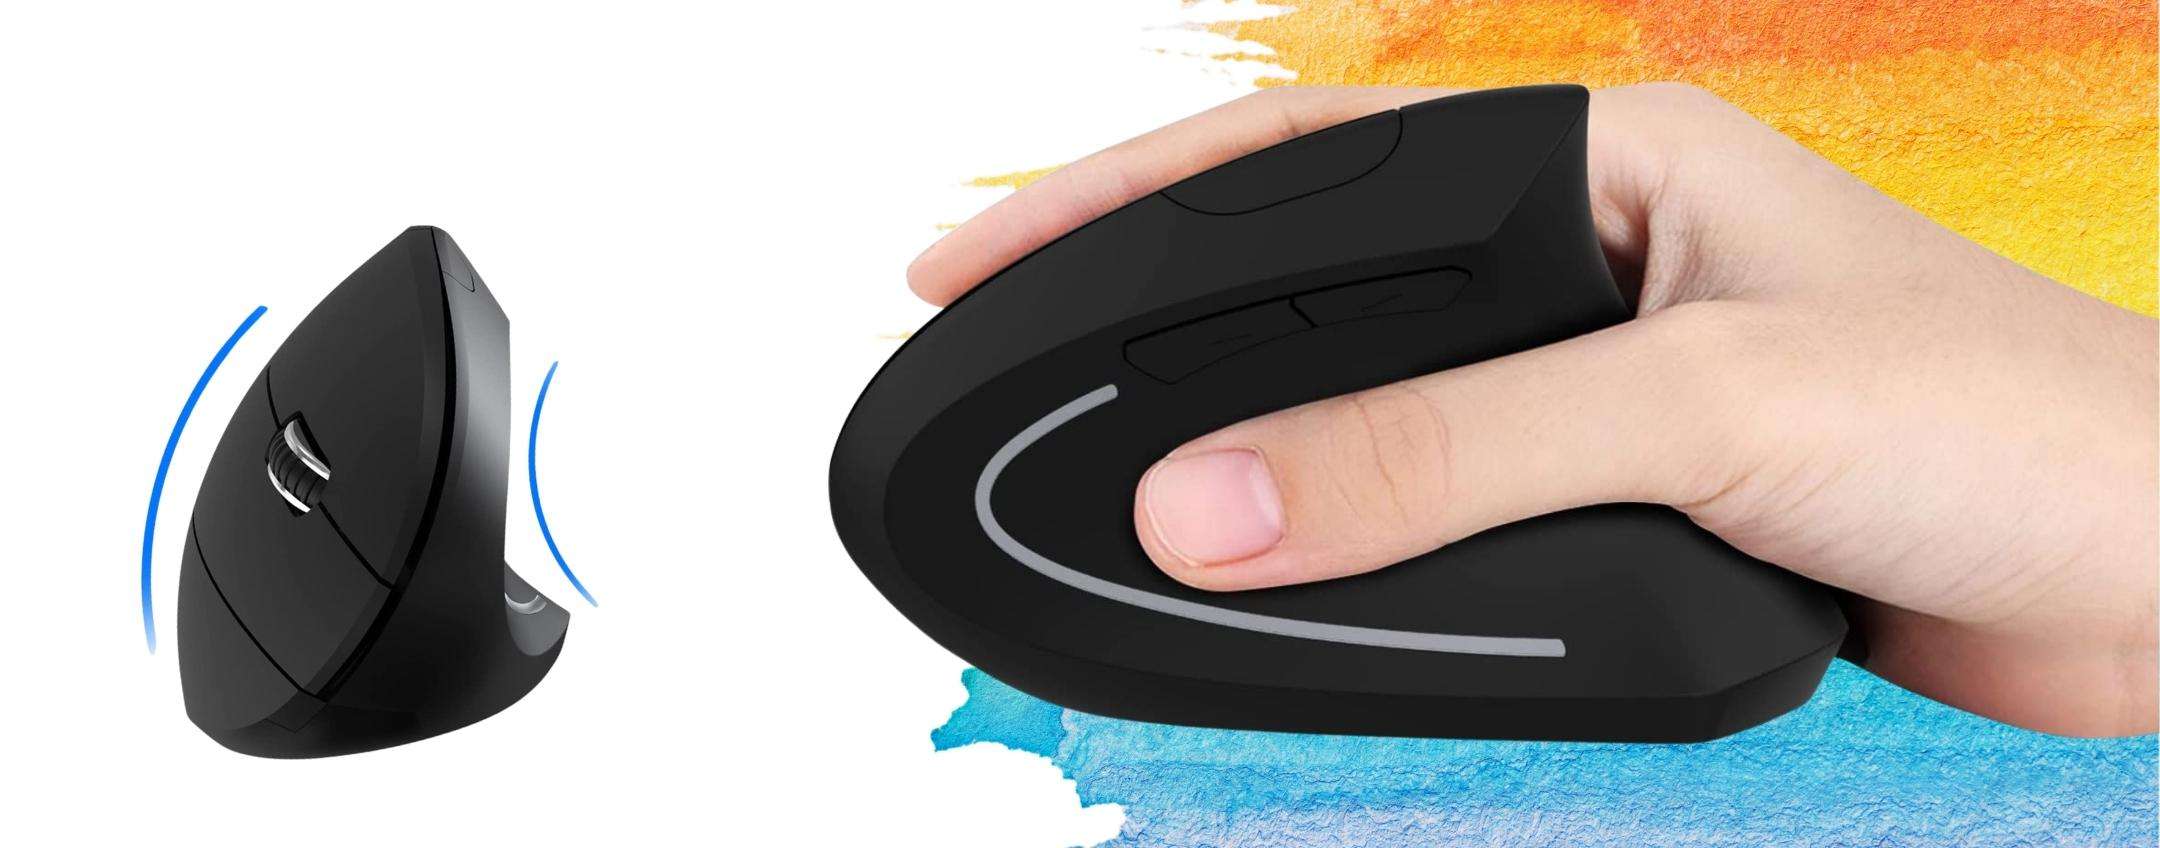 Mouse wireless ergonomico: 19€ per passare le ore al PC senza fastidio